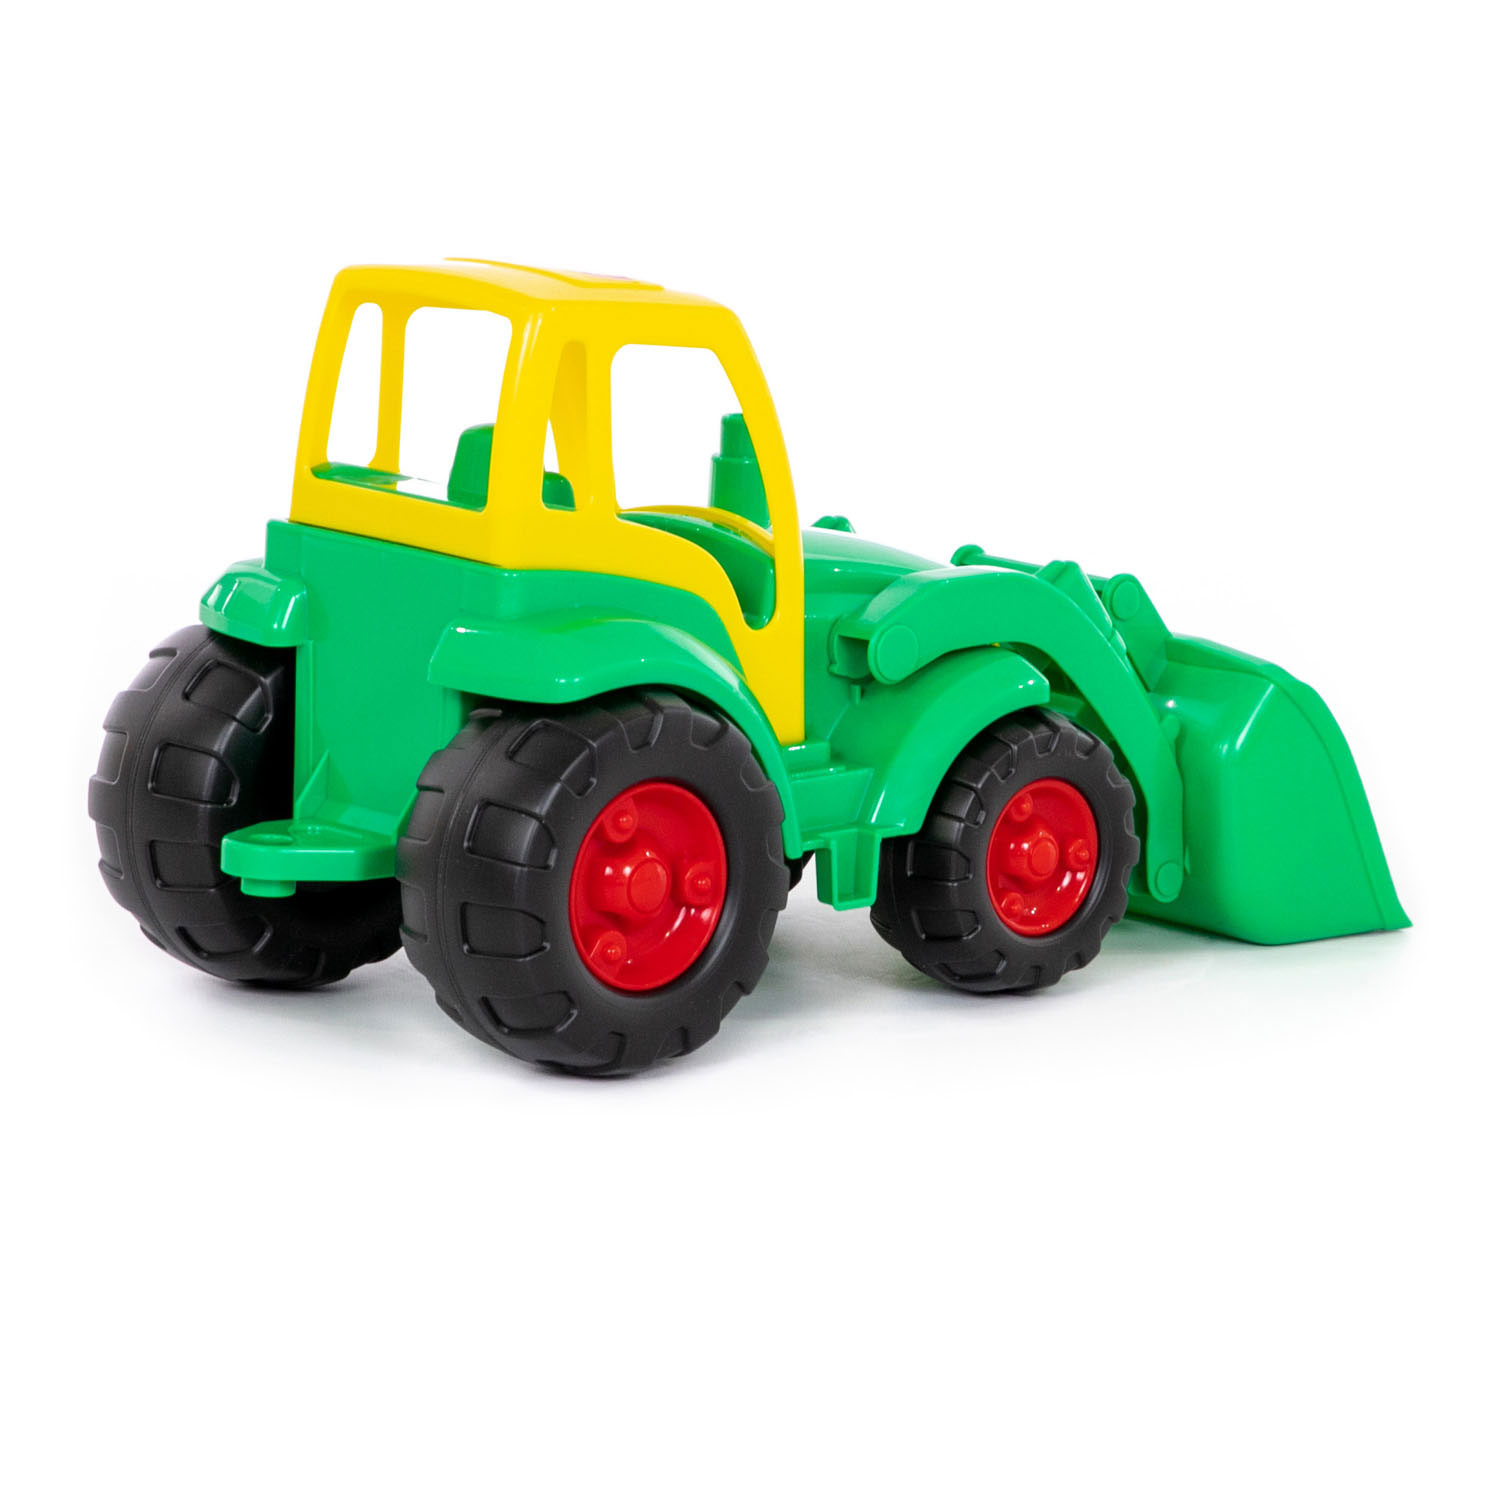 Polesie Traktor mit Schaufelgrün